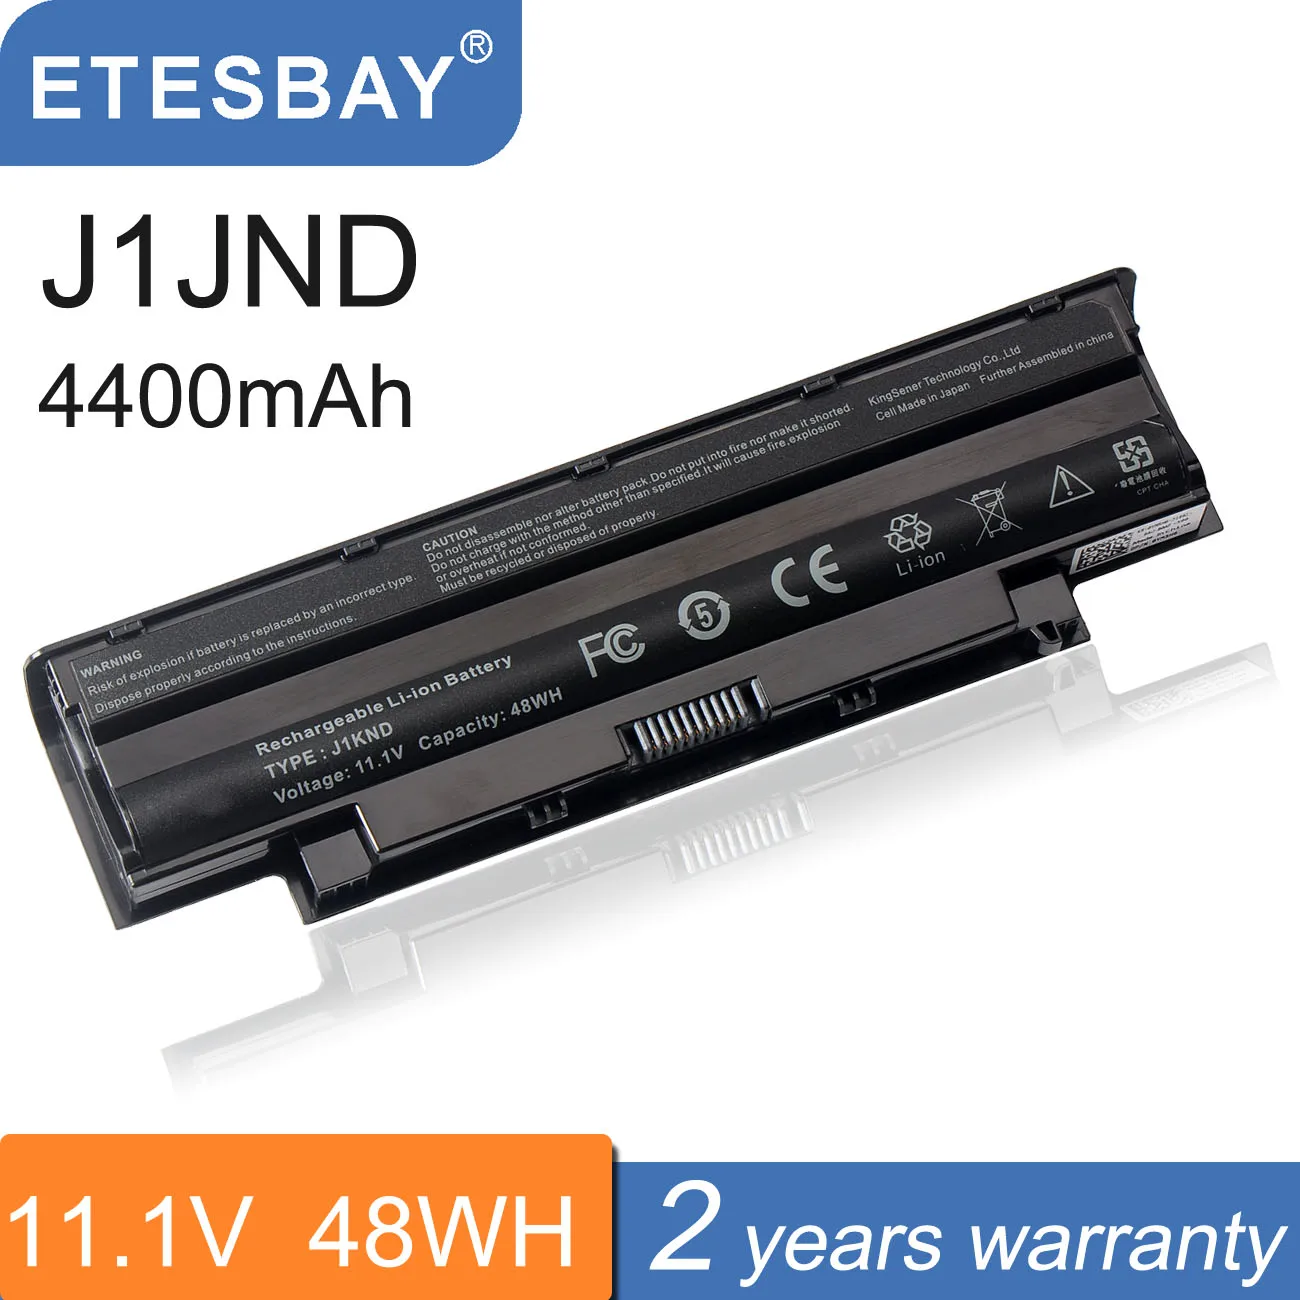 ETESBAY-Batería de ordenador portátil J1KND para DELL Inspiron, N4010, N3010, N3110, N4050, N4110, N5010, N5010D, N5110, N7010, N7110, M501, M501R, M511R, nueva